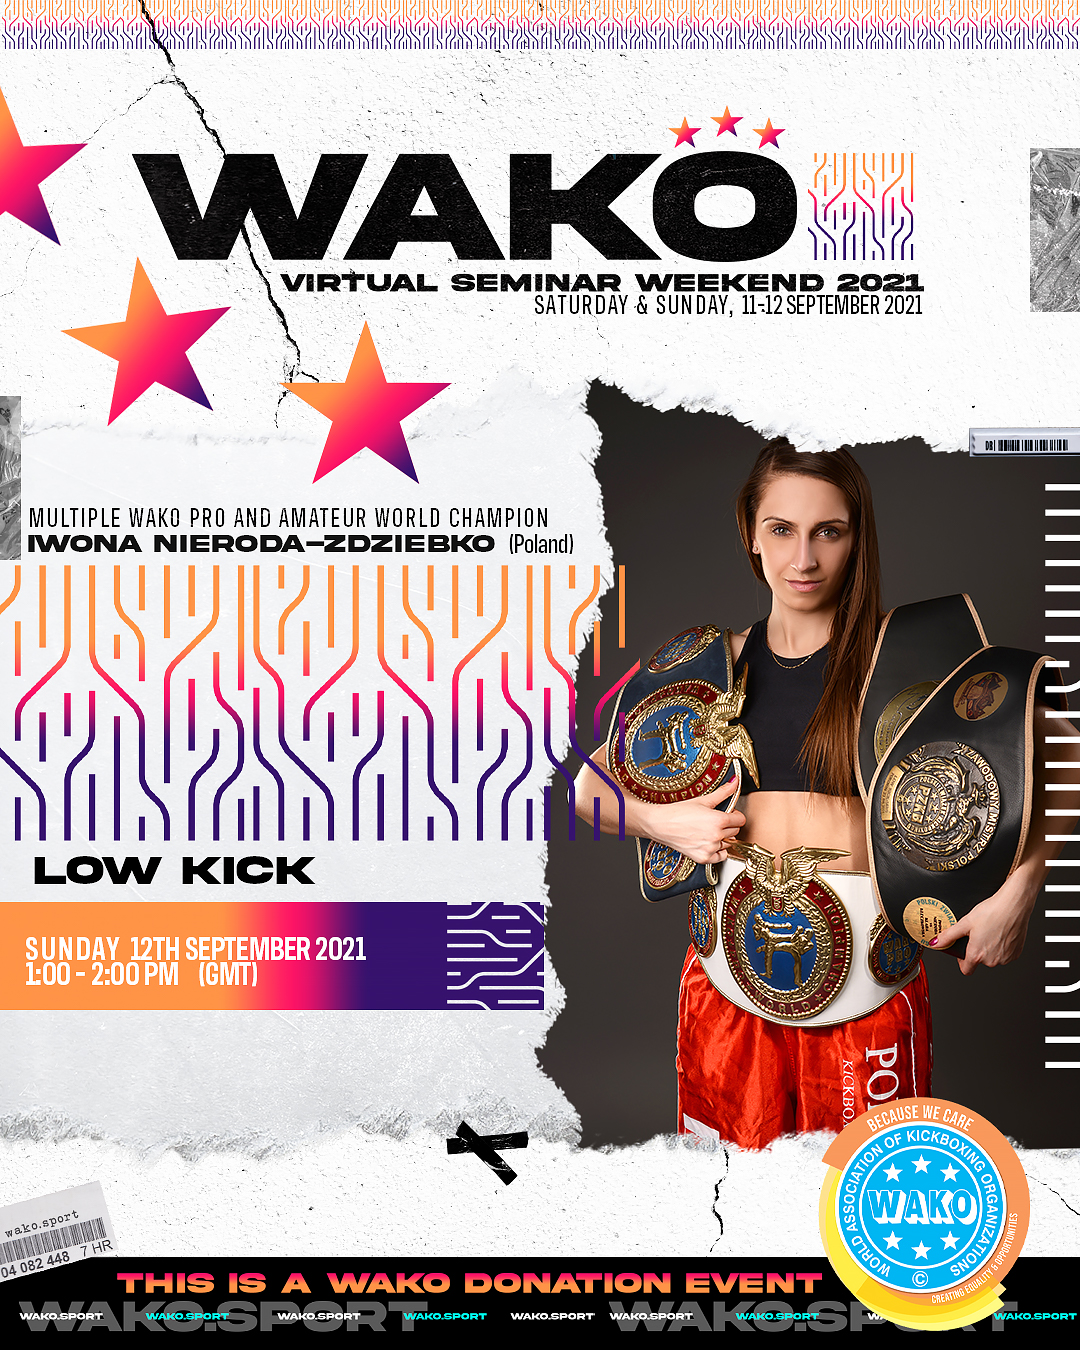 WAKO Virtual Seminar Weekend 2021 - 12 September 1:00-2:00 pm GMT -Low Kick - Iwona Nieroda-Zdziebko (POL)